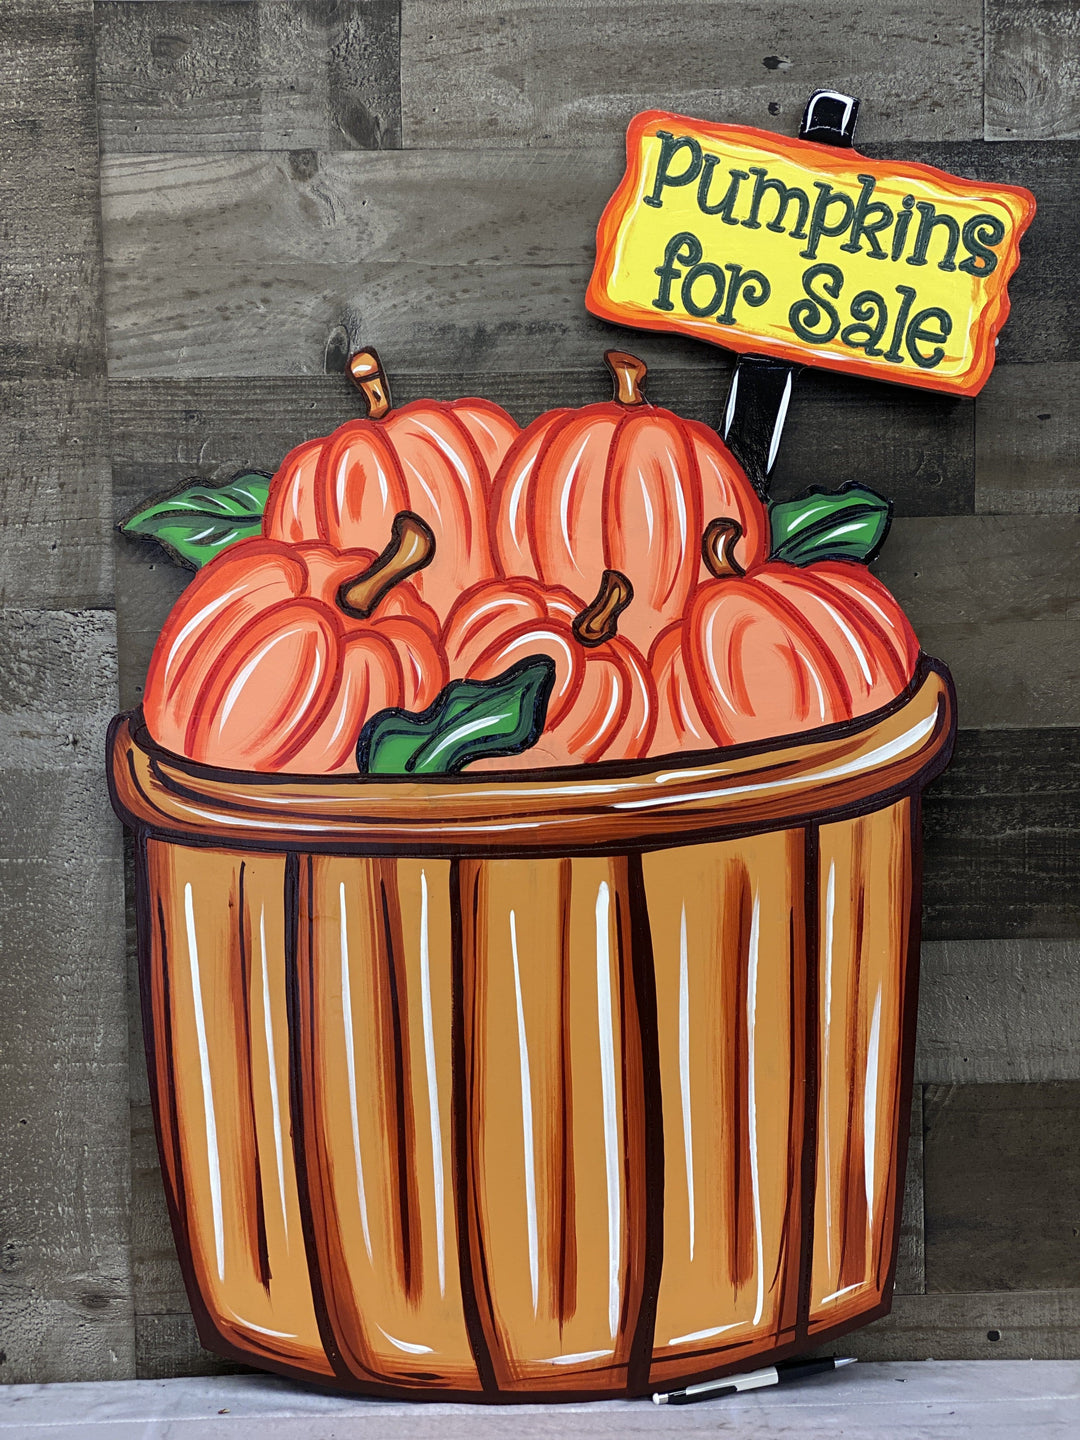 Basket of Pumpkins with Pumpkins for Sale Sign blank Yard Art